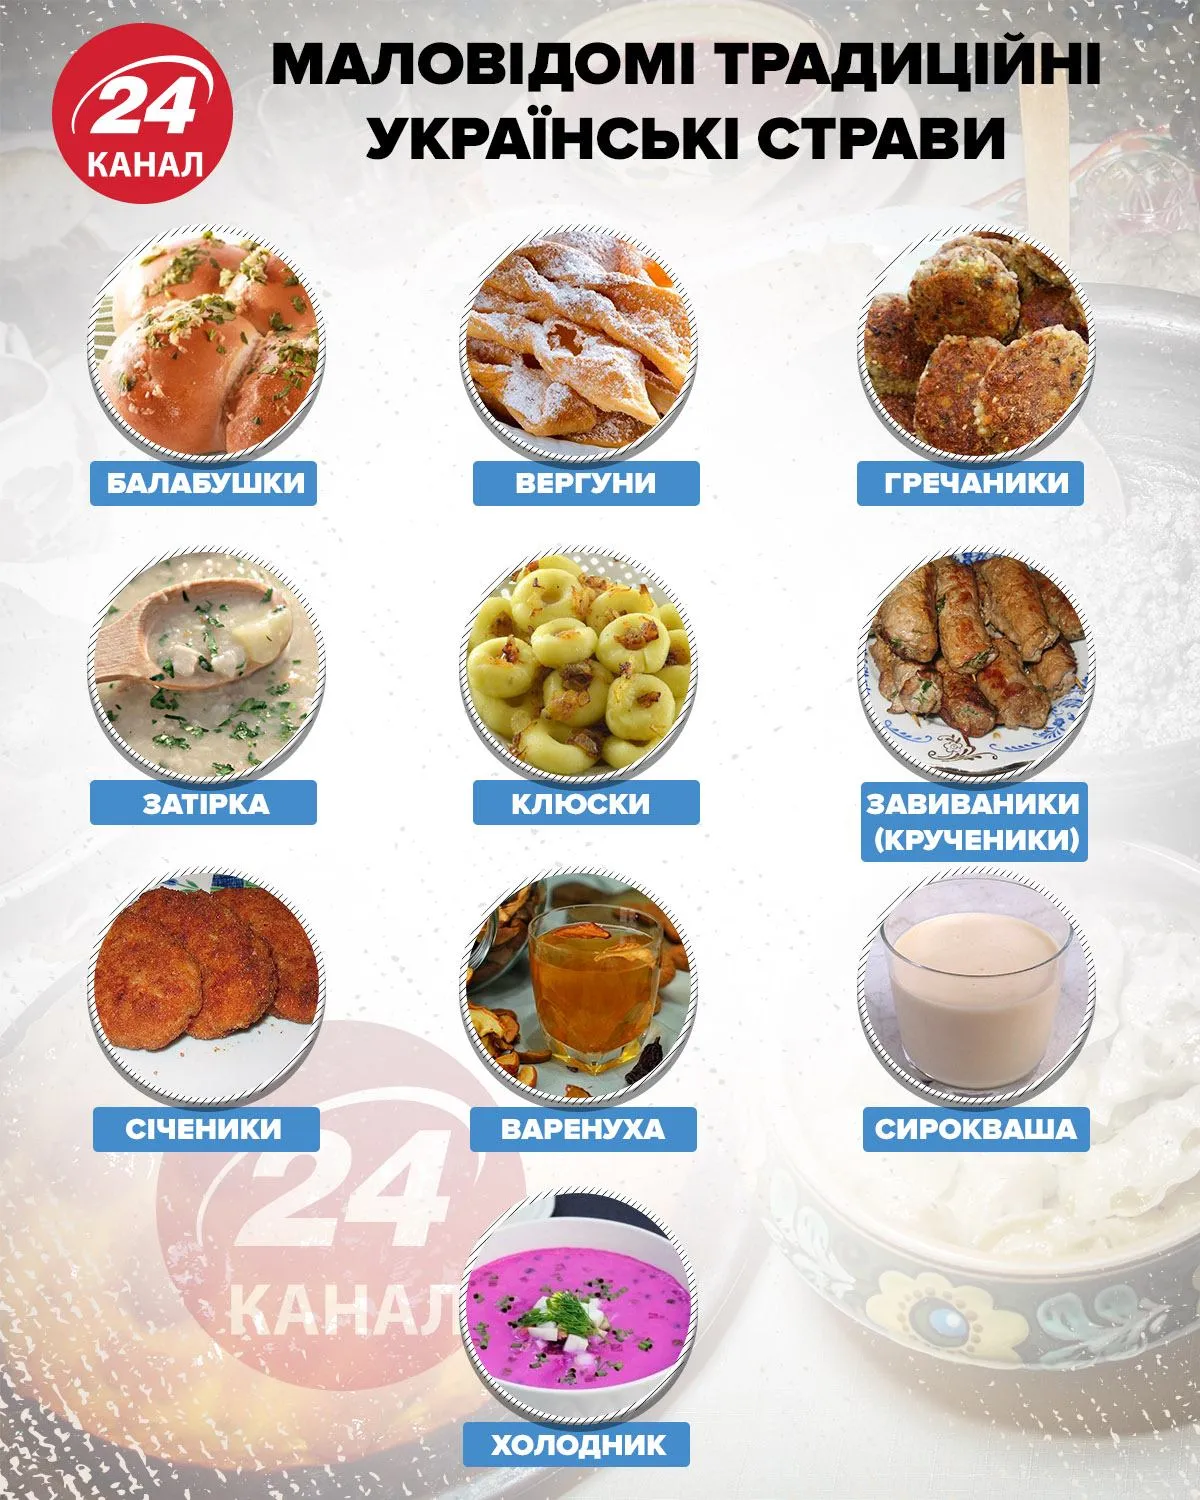 Маловідомі традиційні українські страви інфографіка 24 канал